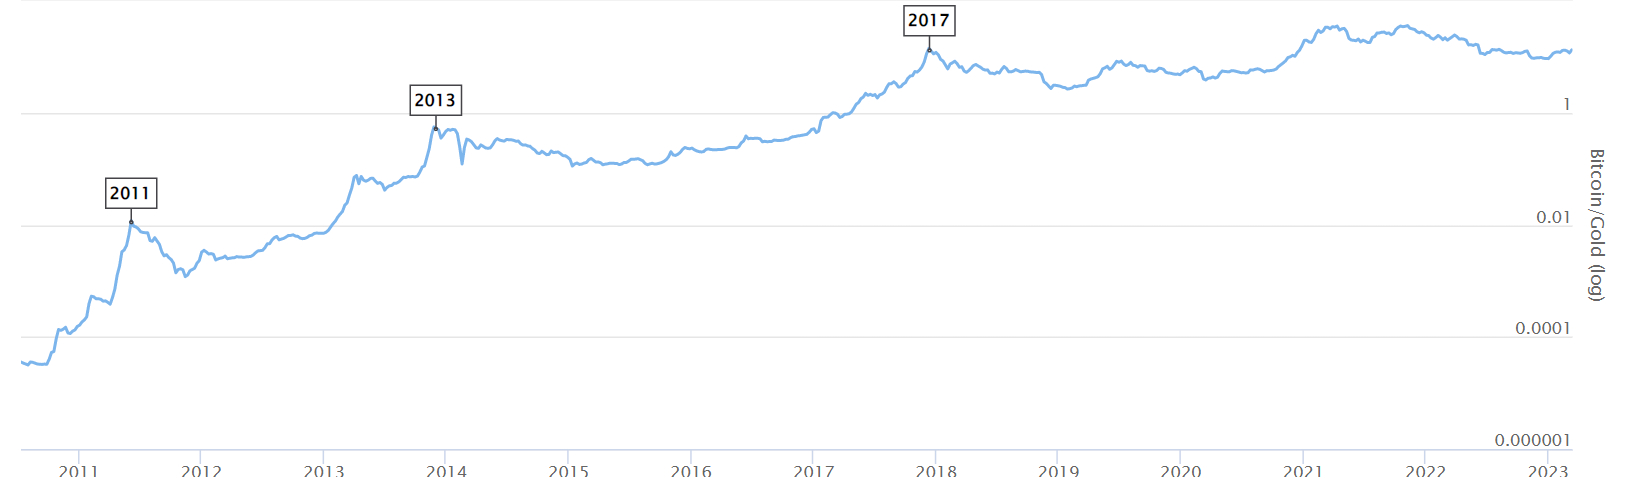 Thang logarit hiển thị giá tương đối của Bitcoin so với vàng - từ khi BTC ra đời đến ngày 15 tháng 3 năm 2023.